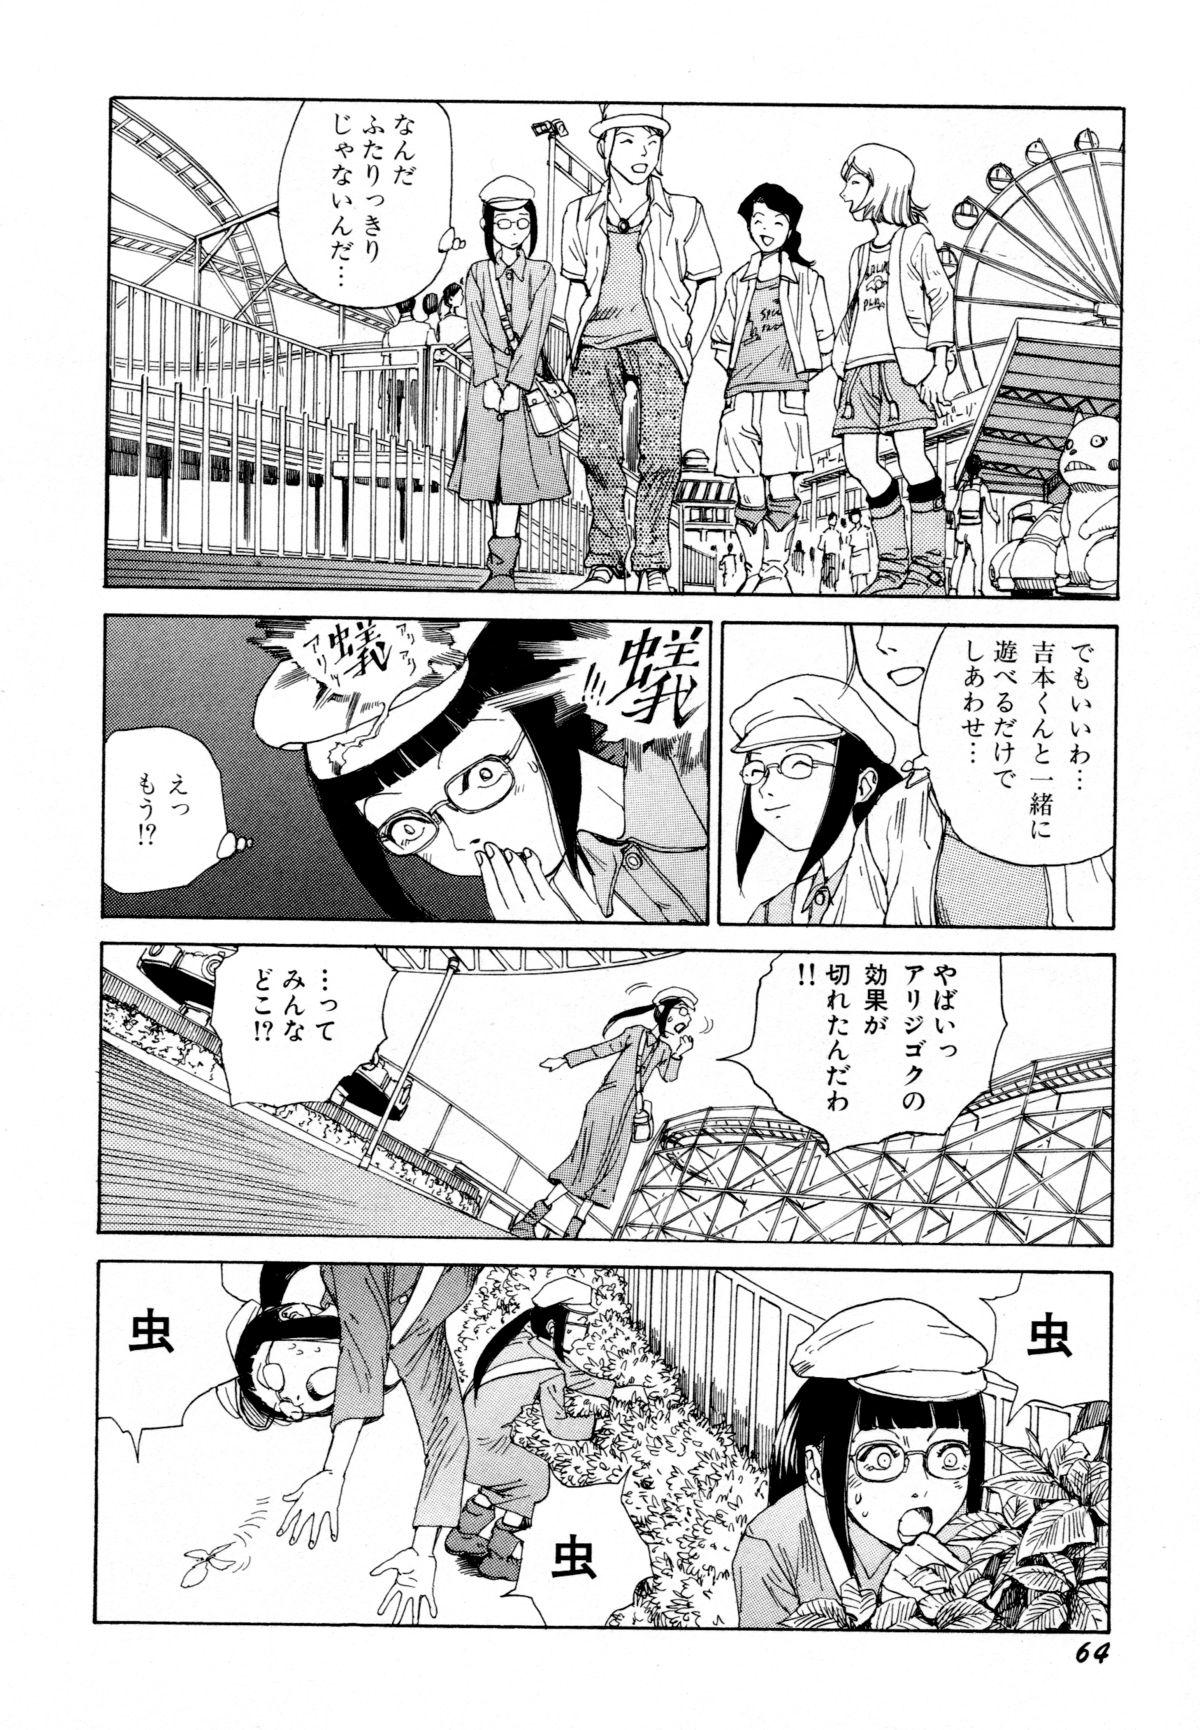 Arijigoku vs Barabara Shoujo - Antlion vs BaraBara Girl 65